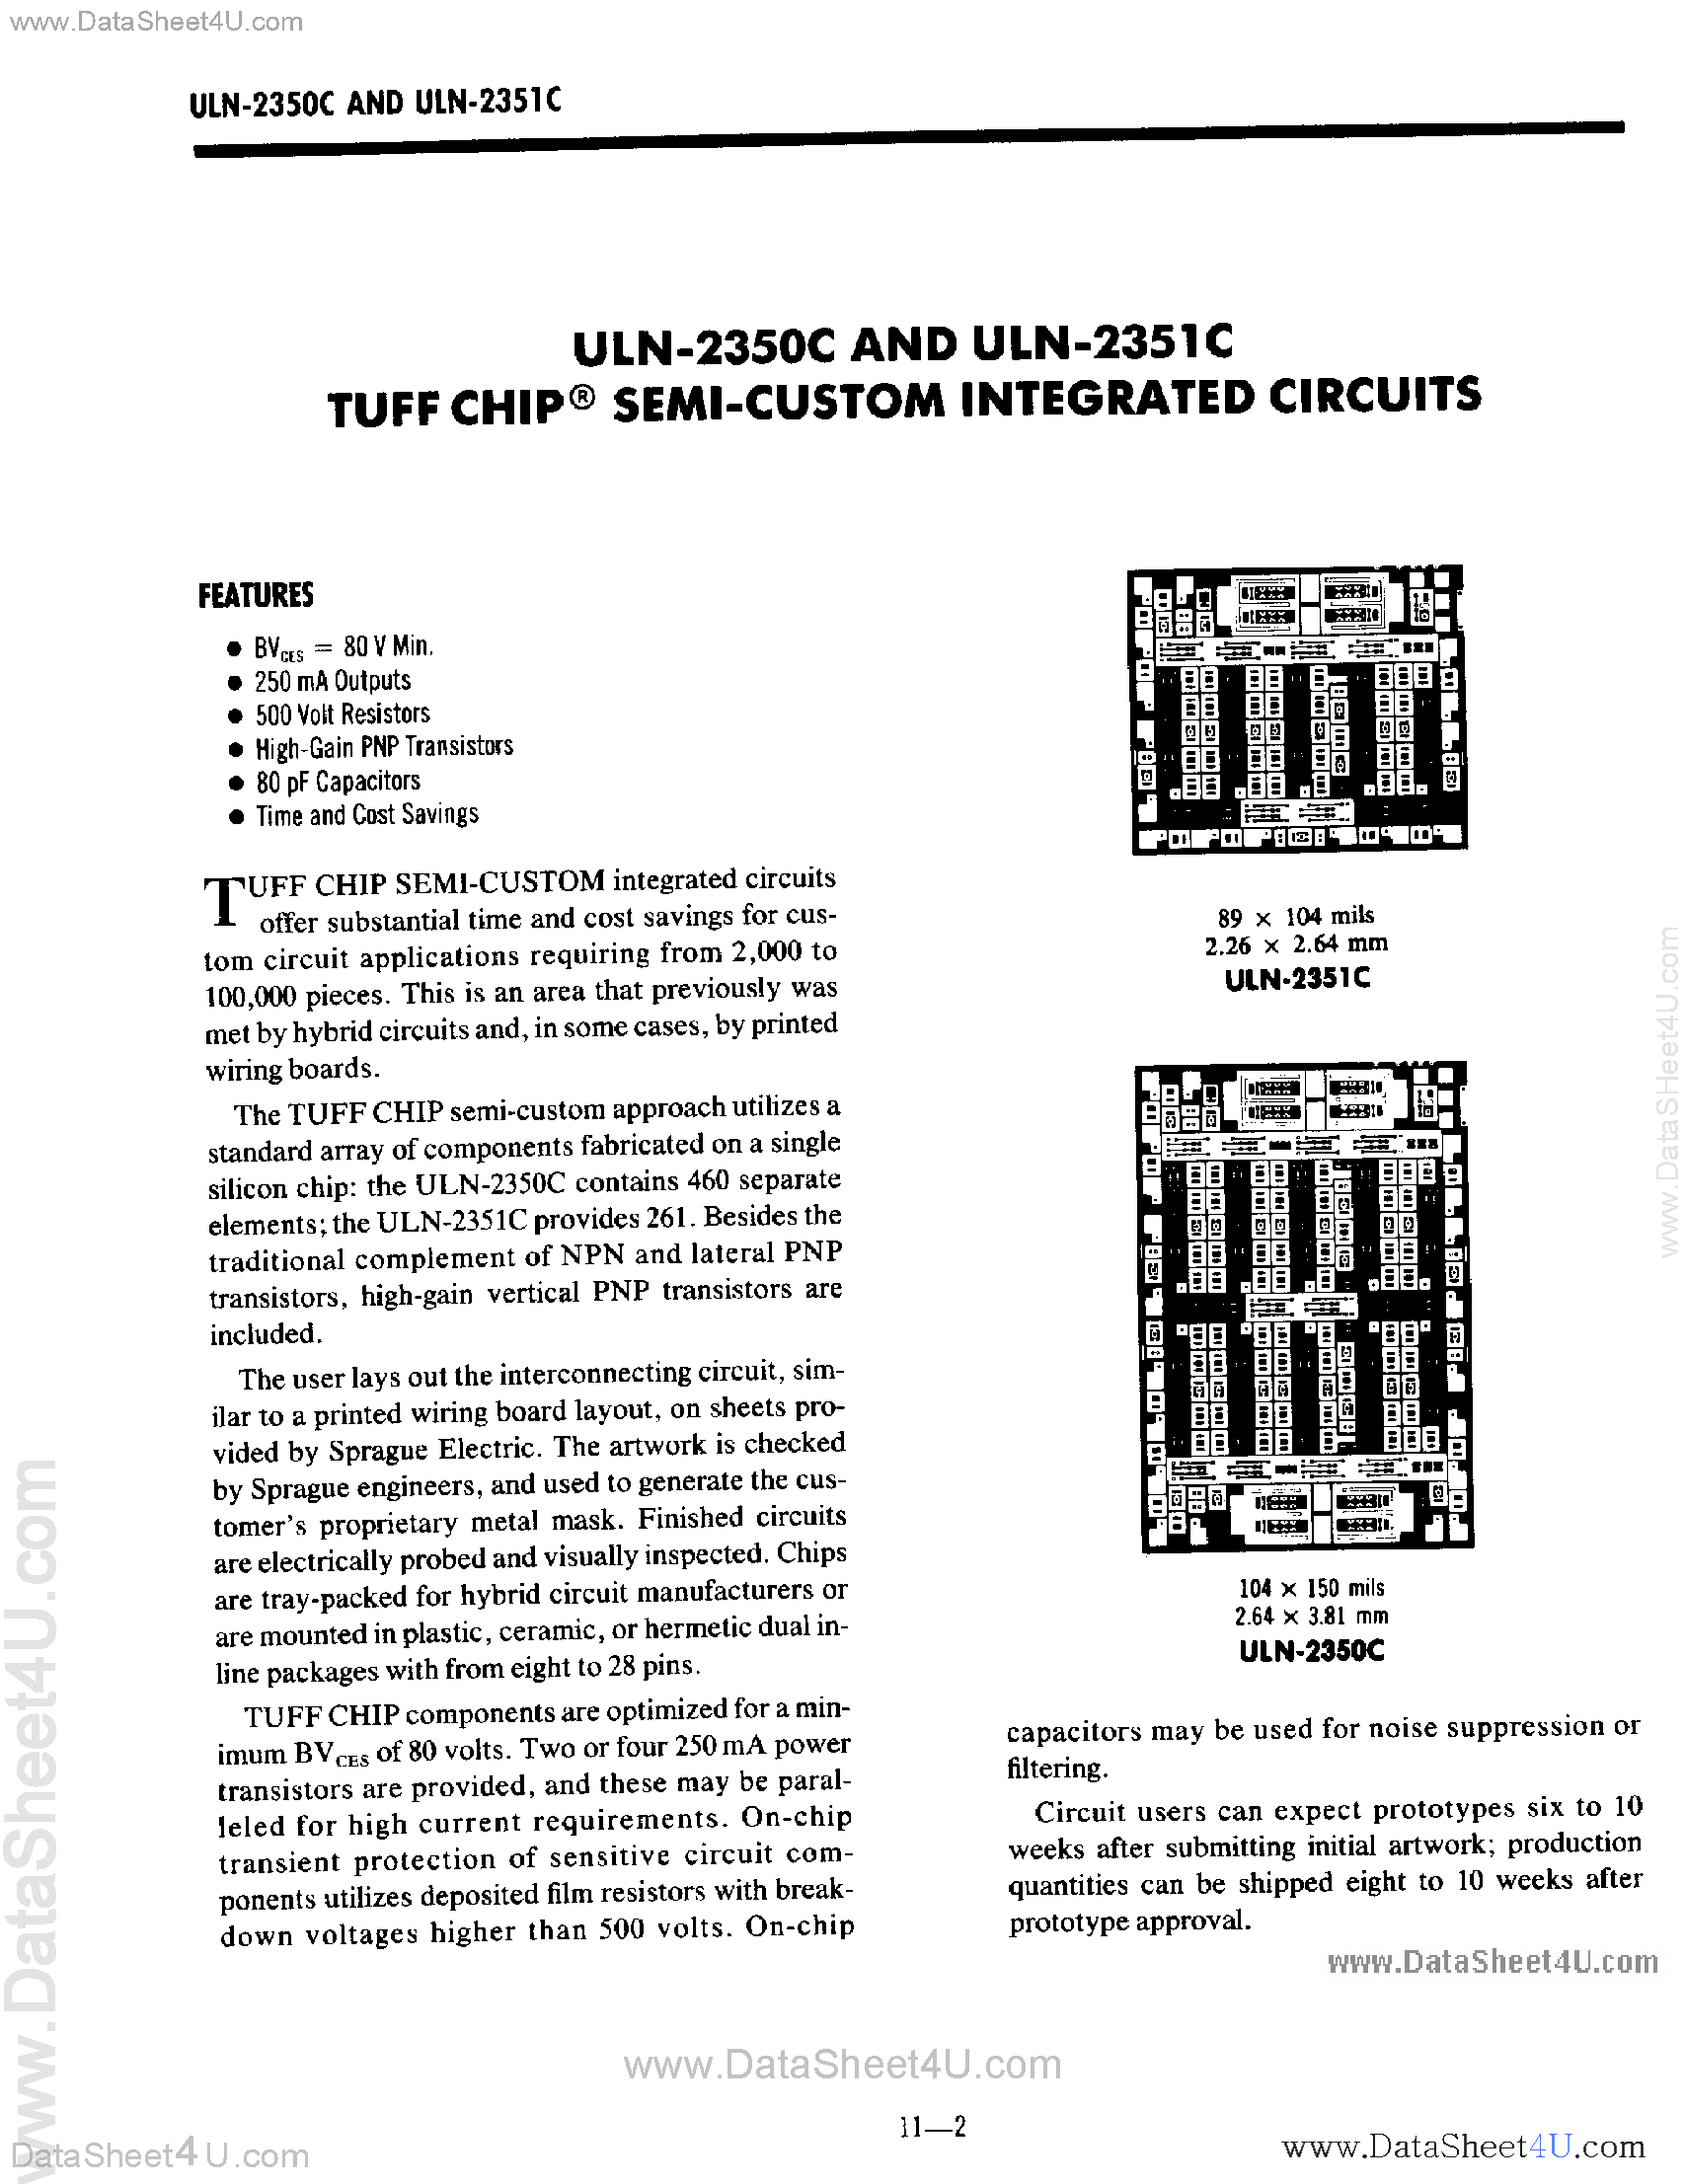 Даташит ULN-2350C - (ULN-2350C / ULN-2351C) Tuff Chip Semi Custom Integrated Circuits страница 1